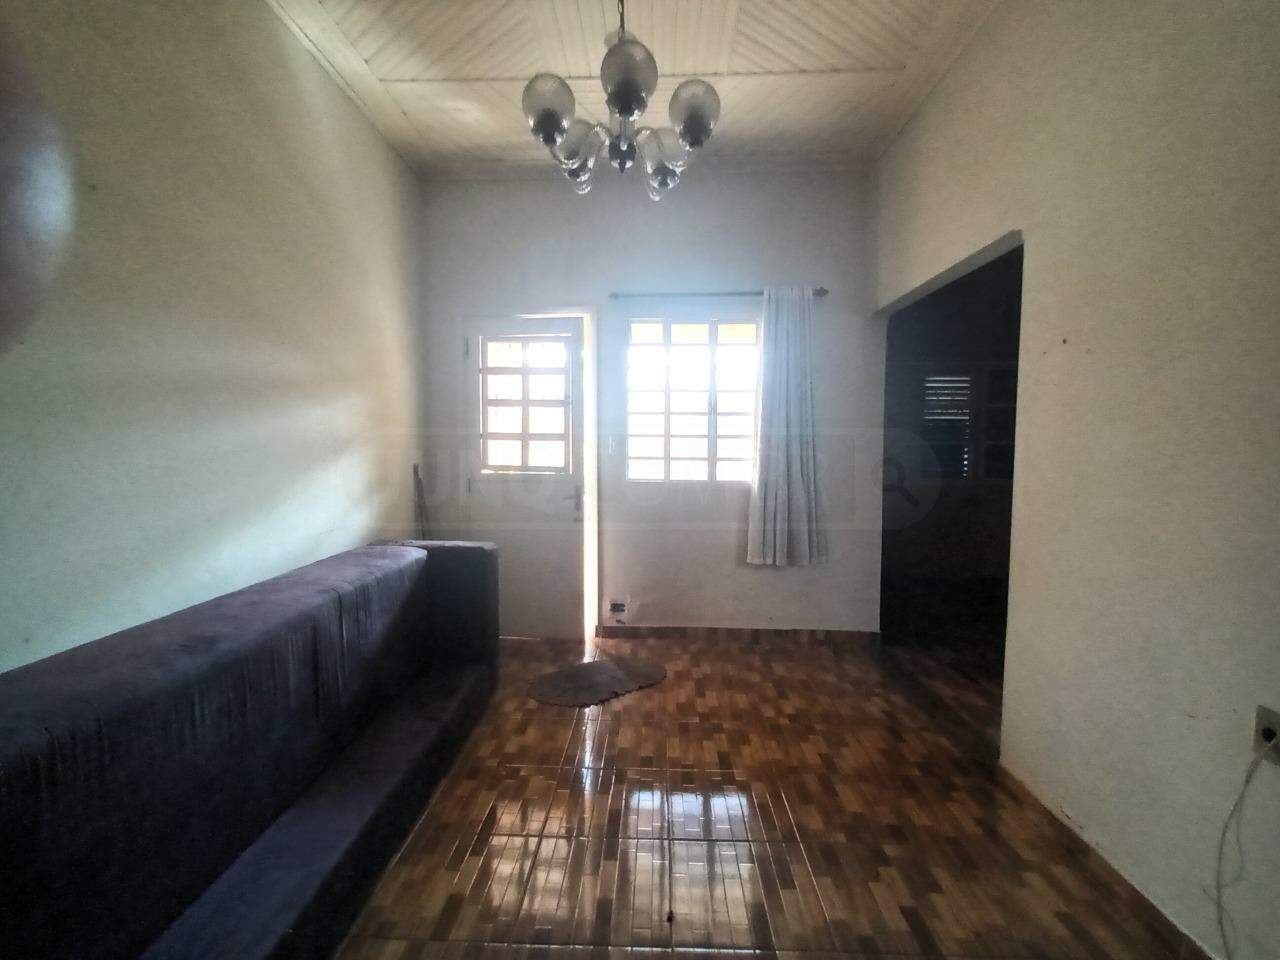 Casa à venda, 2 quartos, sendo 1 suíte, no bairro Cidade Alta em Piracicaba - SP